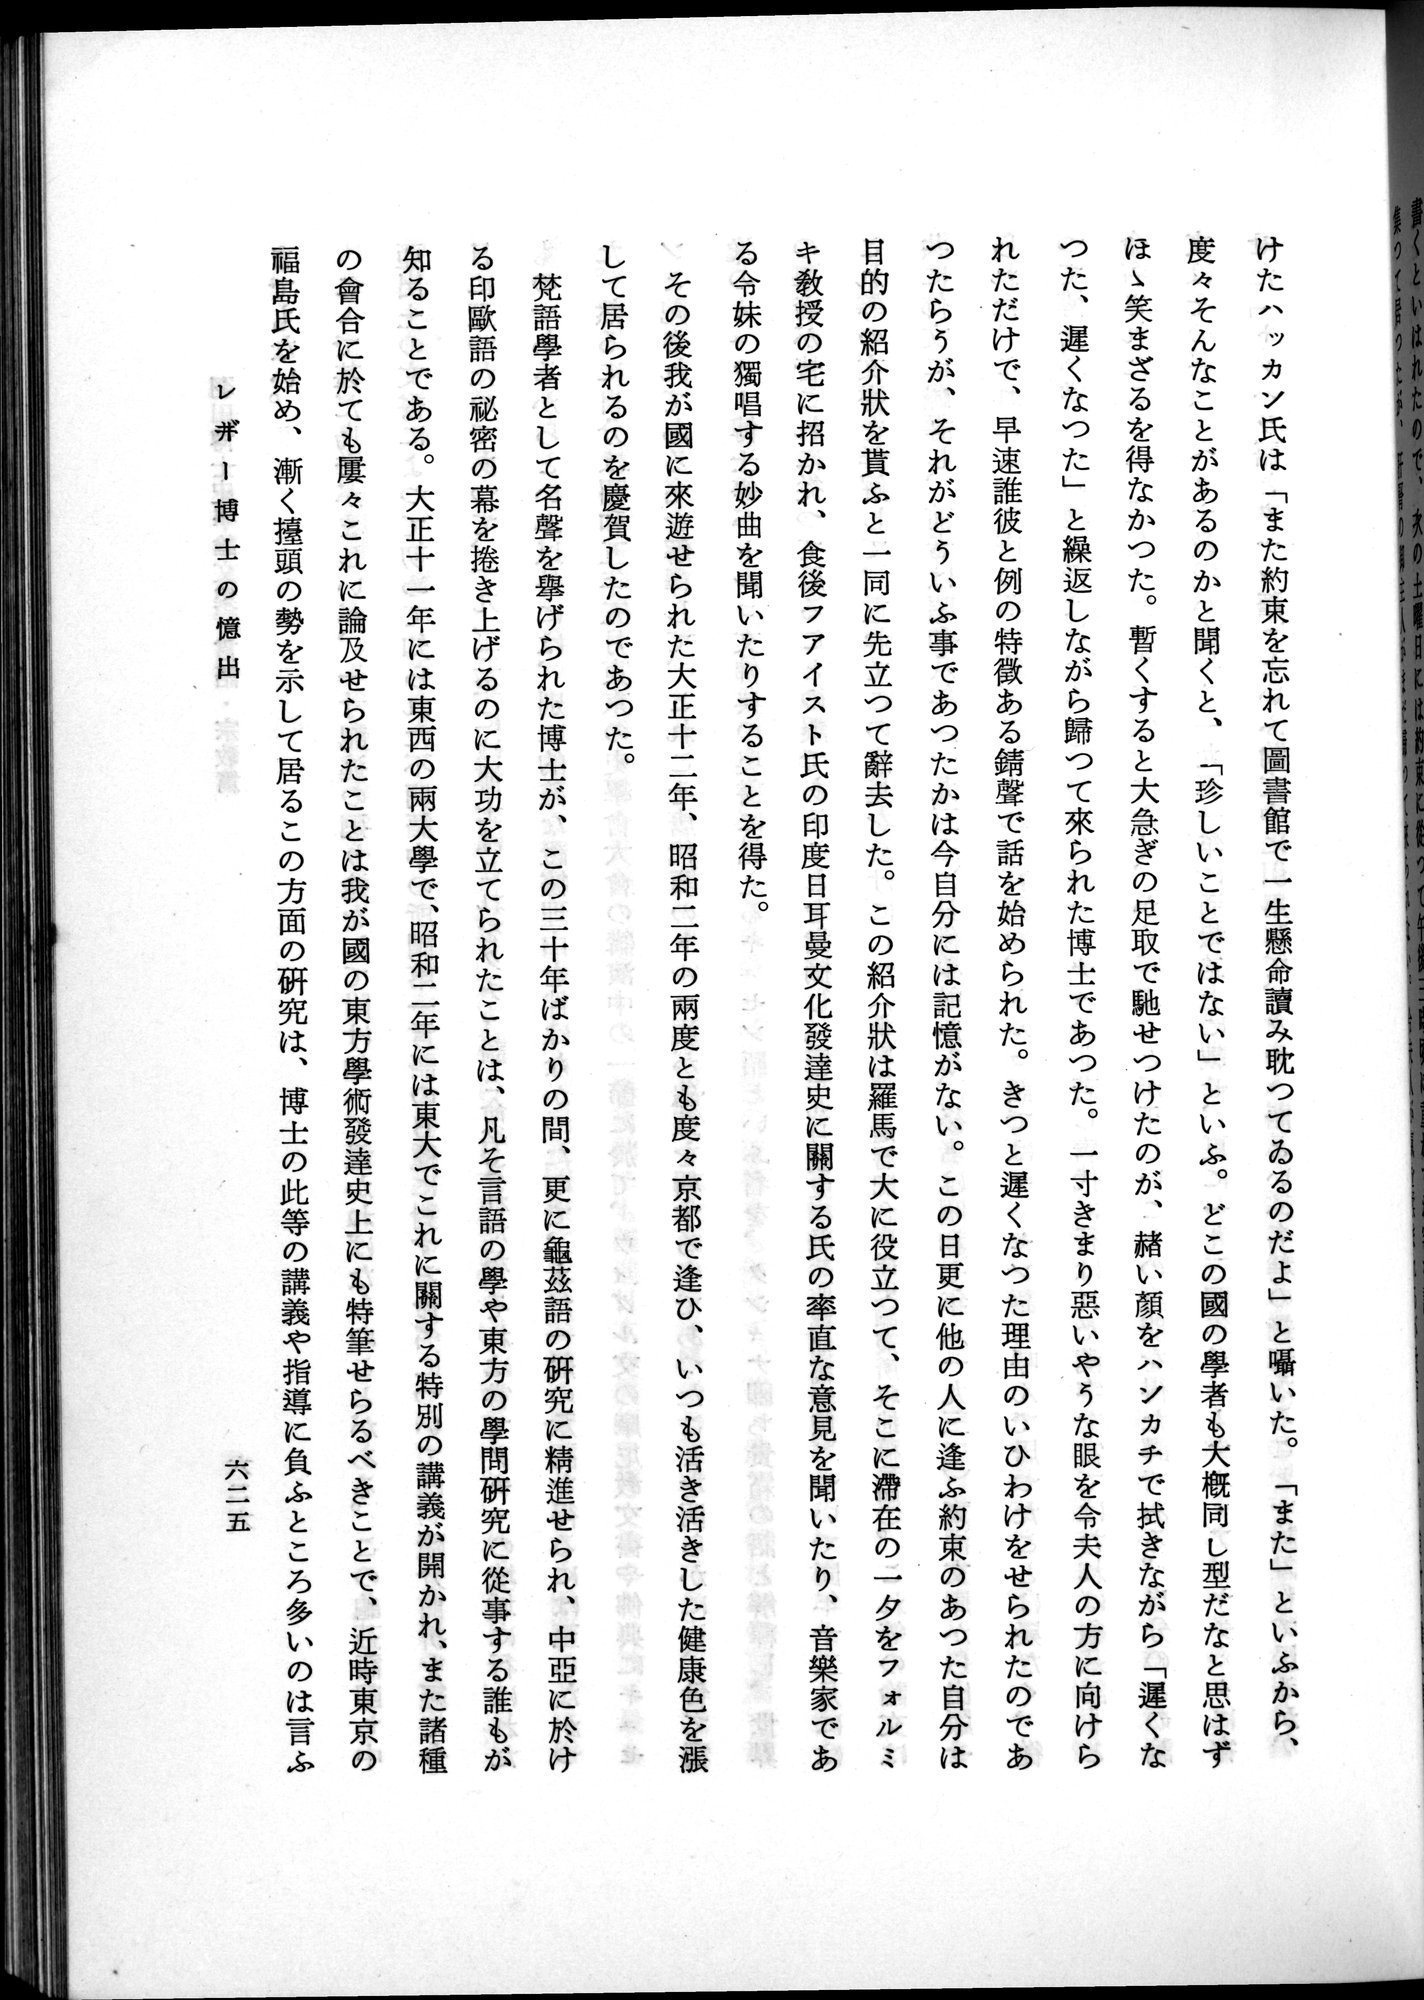 羽田博士史学論文集 : vol.2 / Page 689 (Grayscale High Resolution Image)